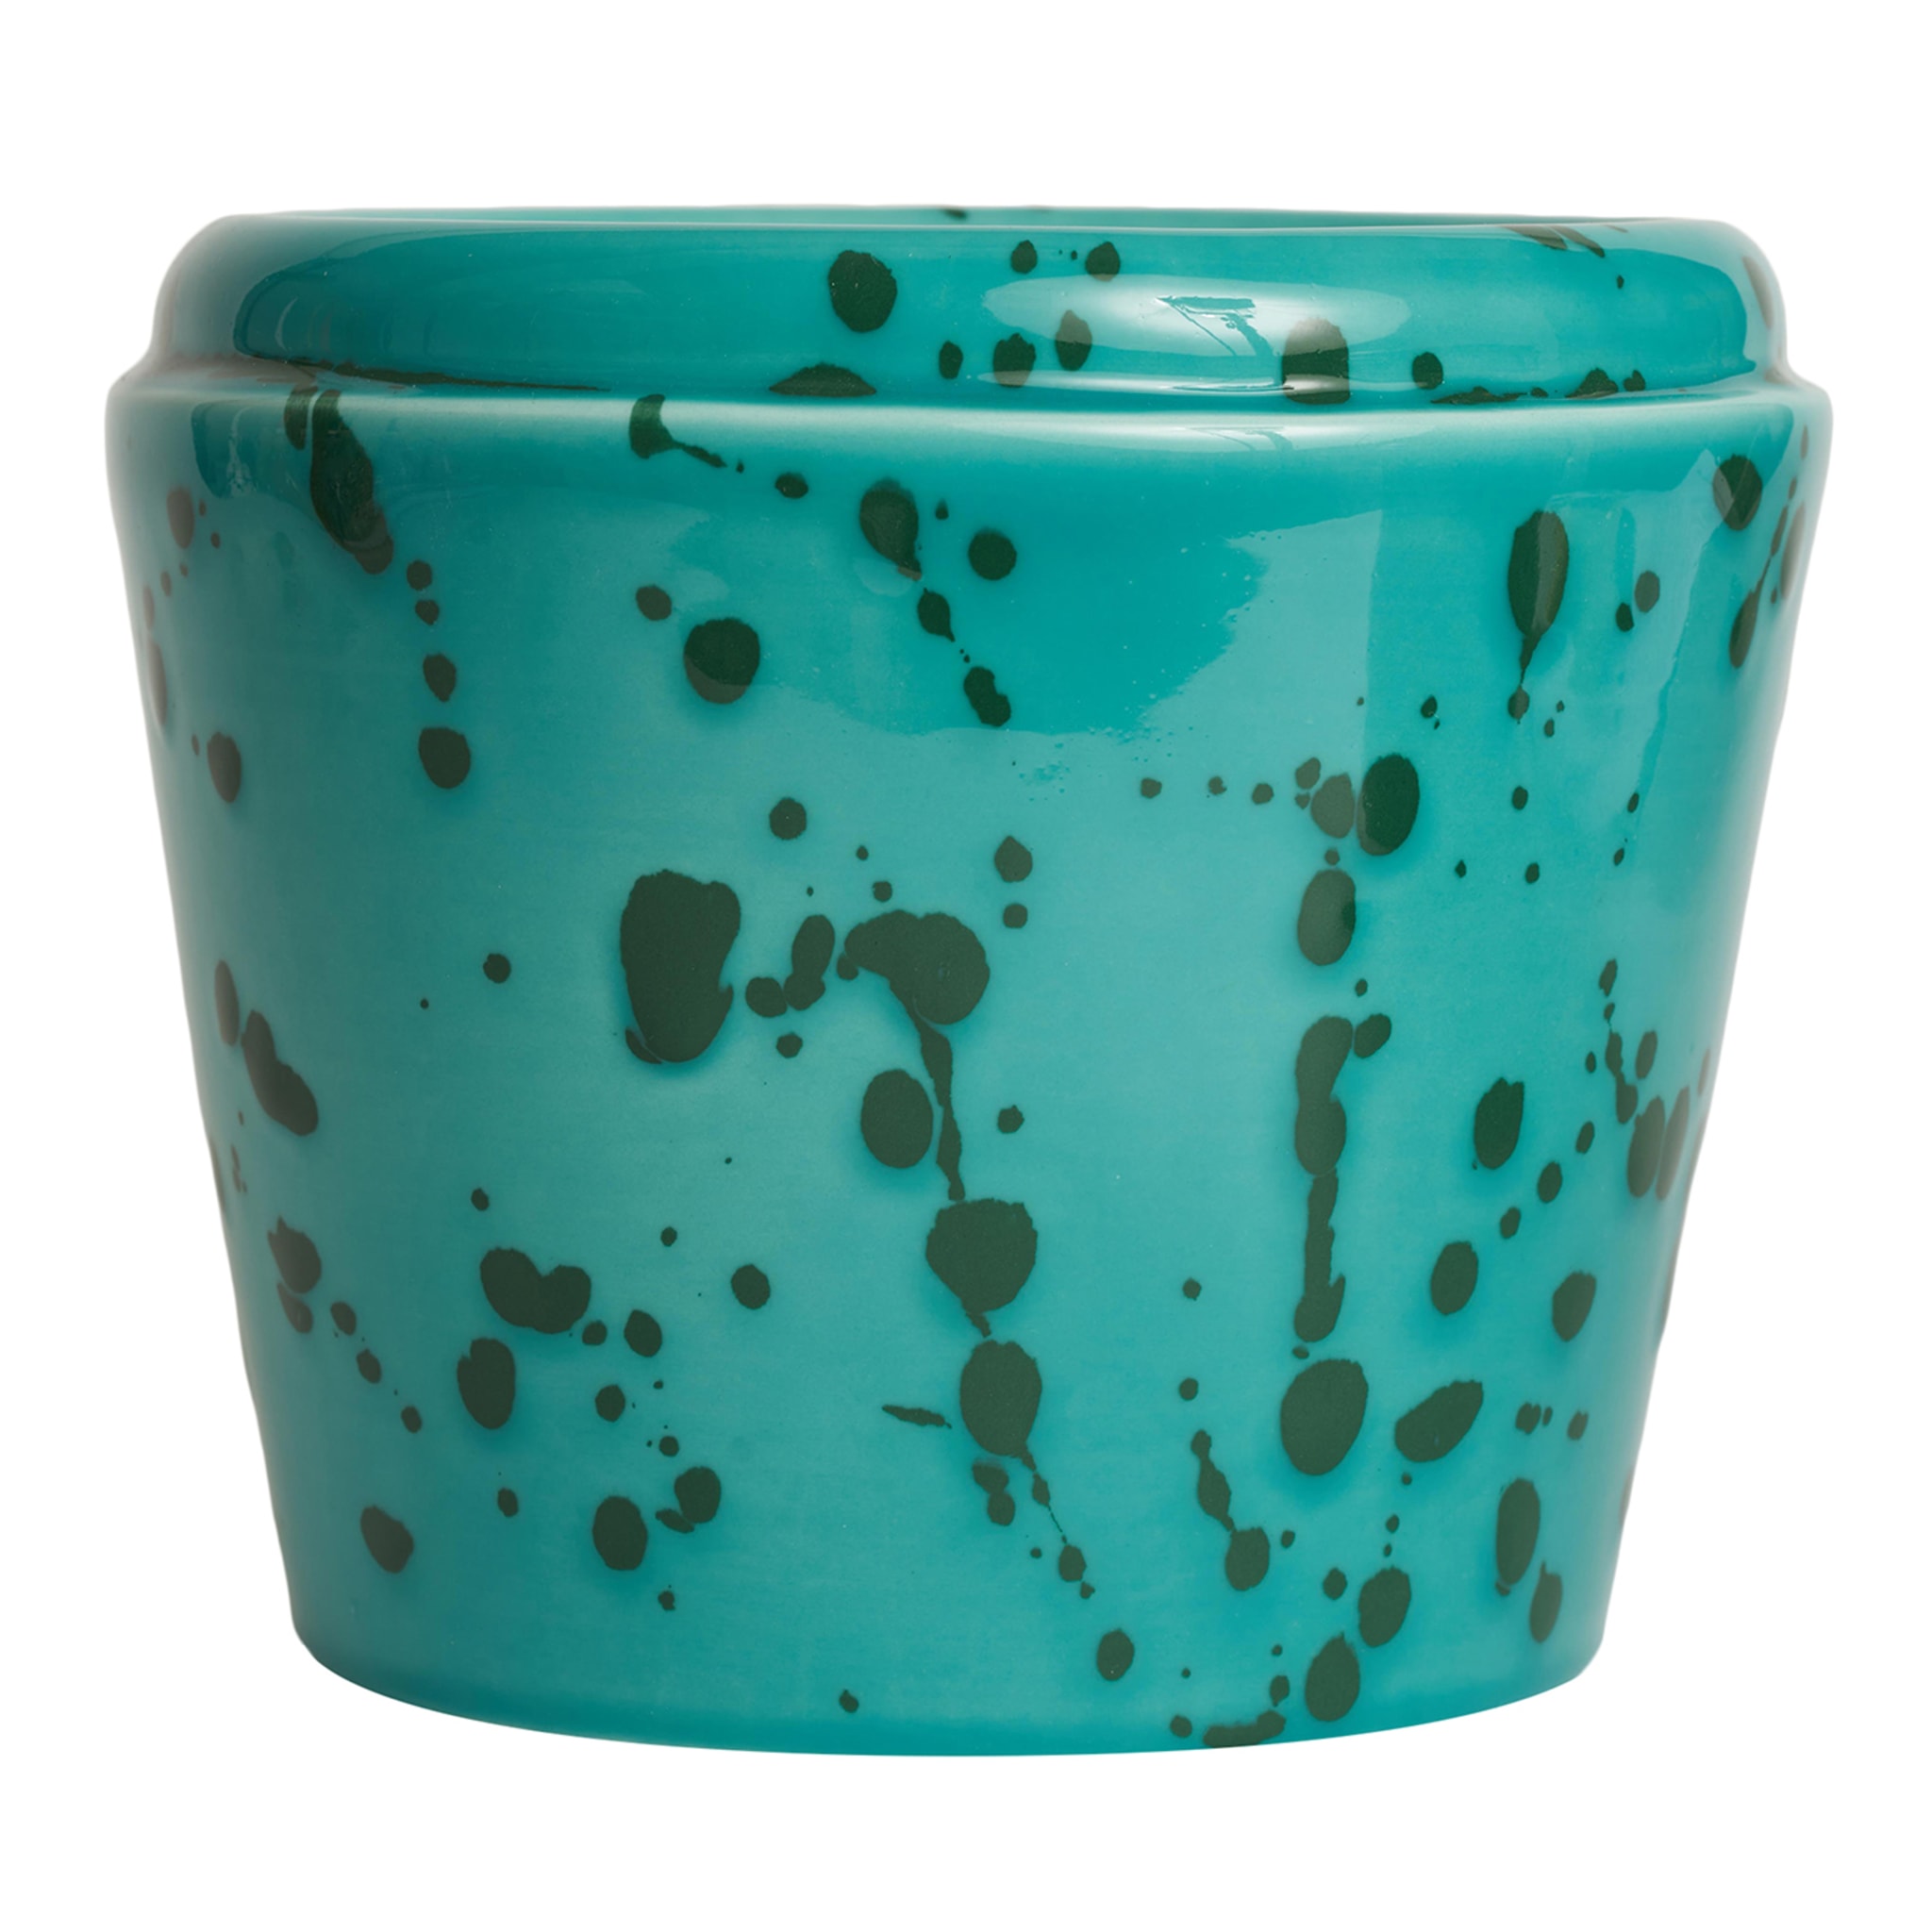  Aqua and Green Ceramic Cachepot Vase - Main view